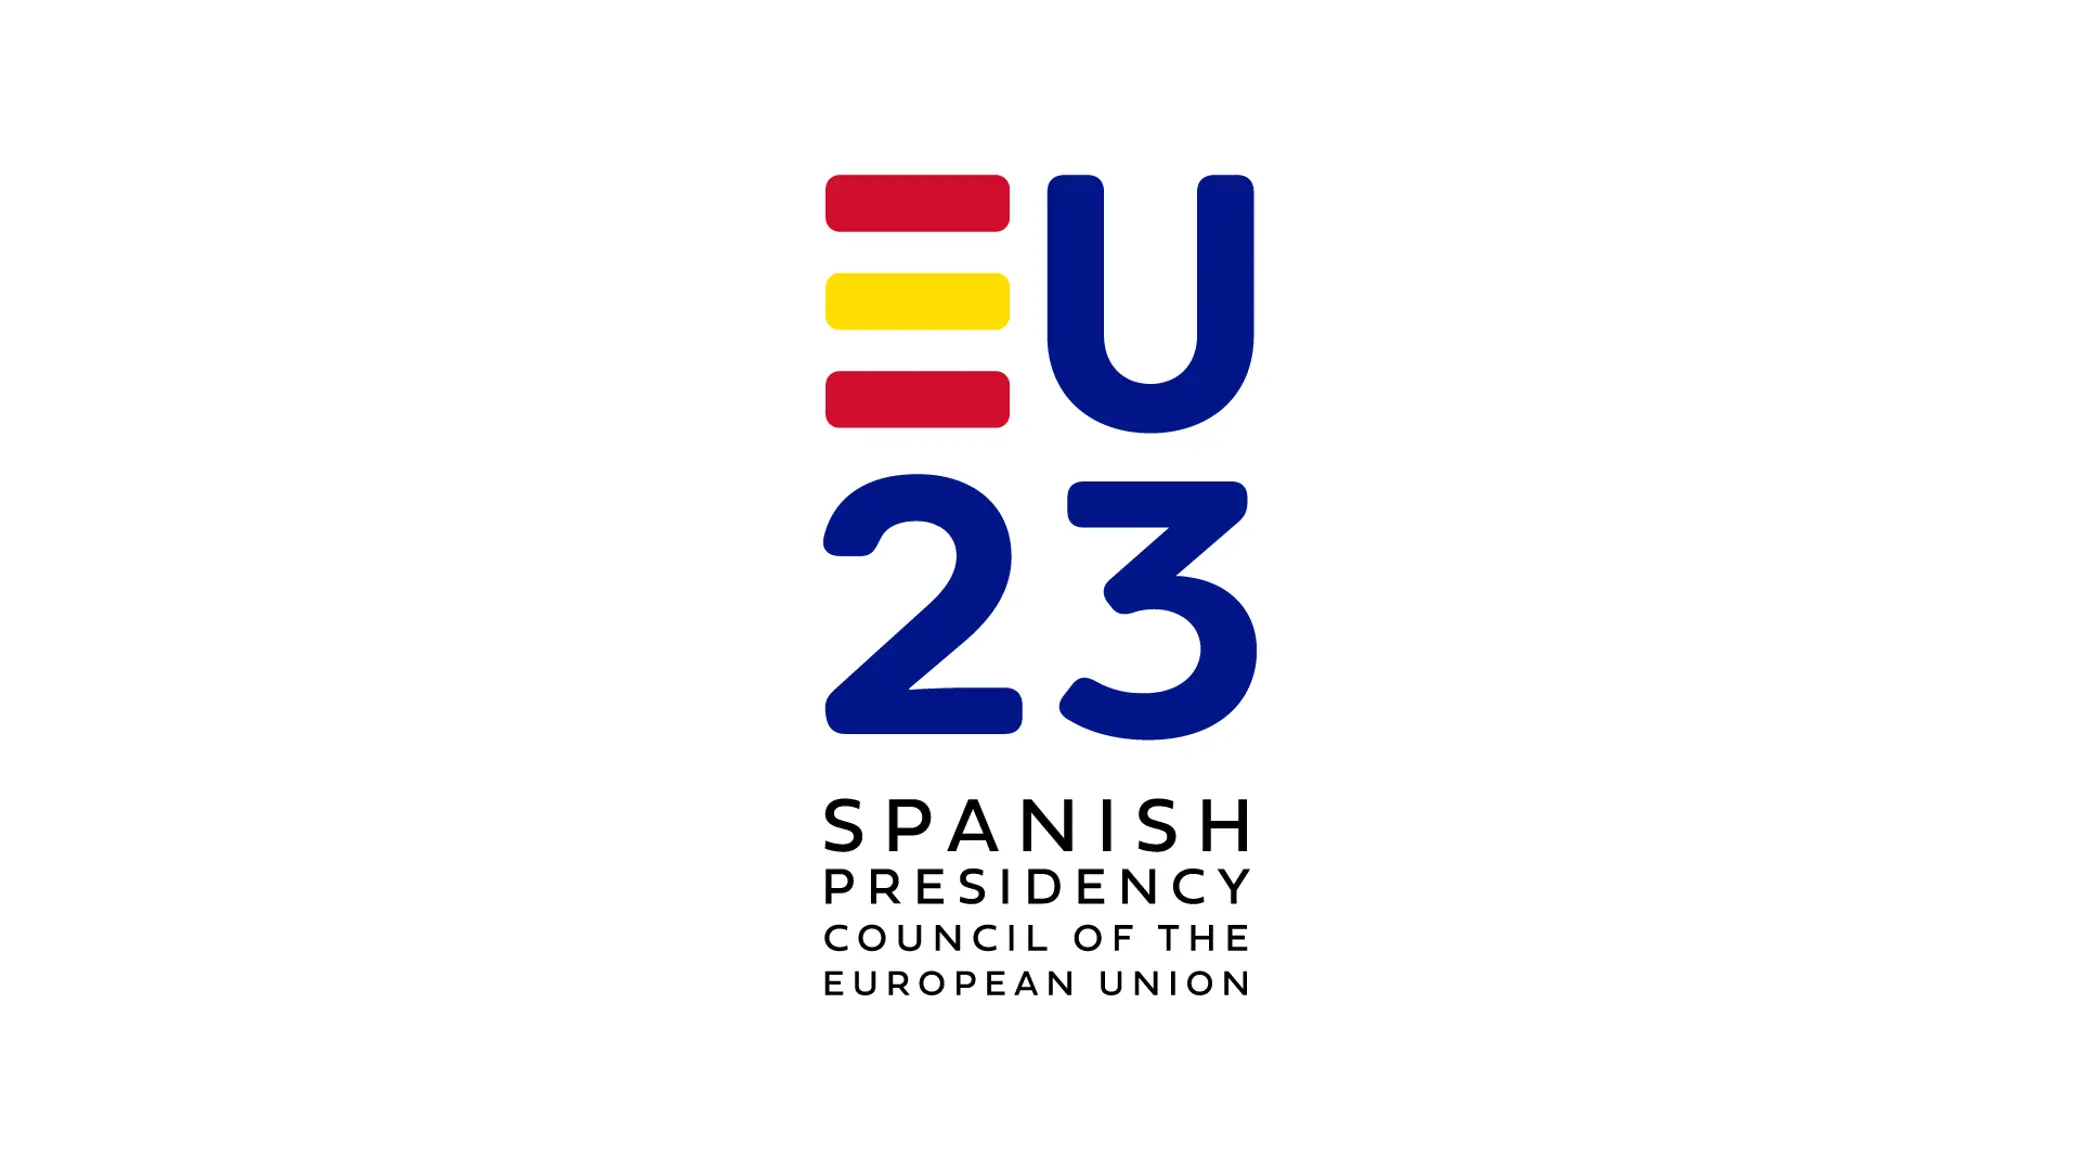 Přečtete si více ze článku Startuje předsednictví Španělska!